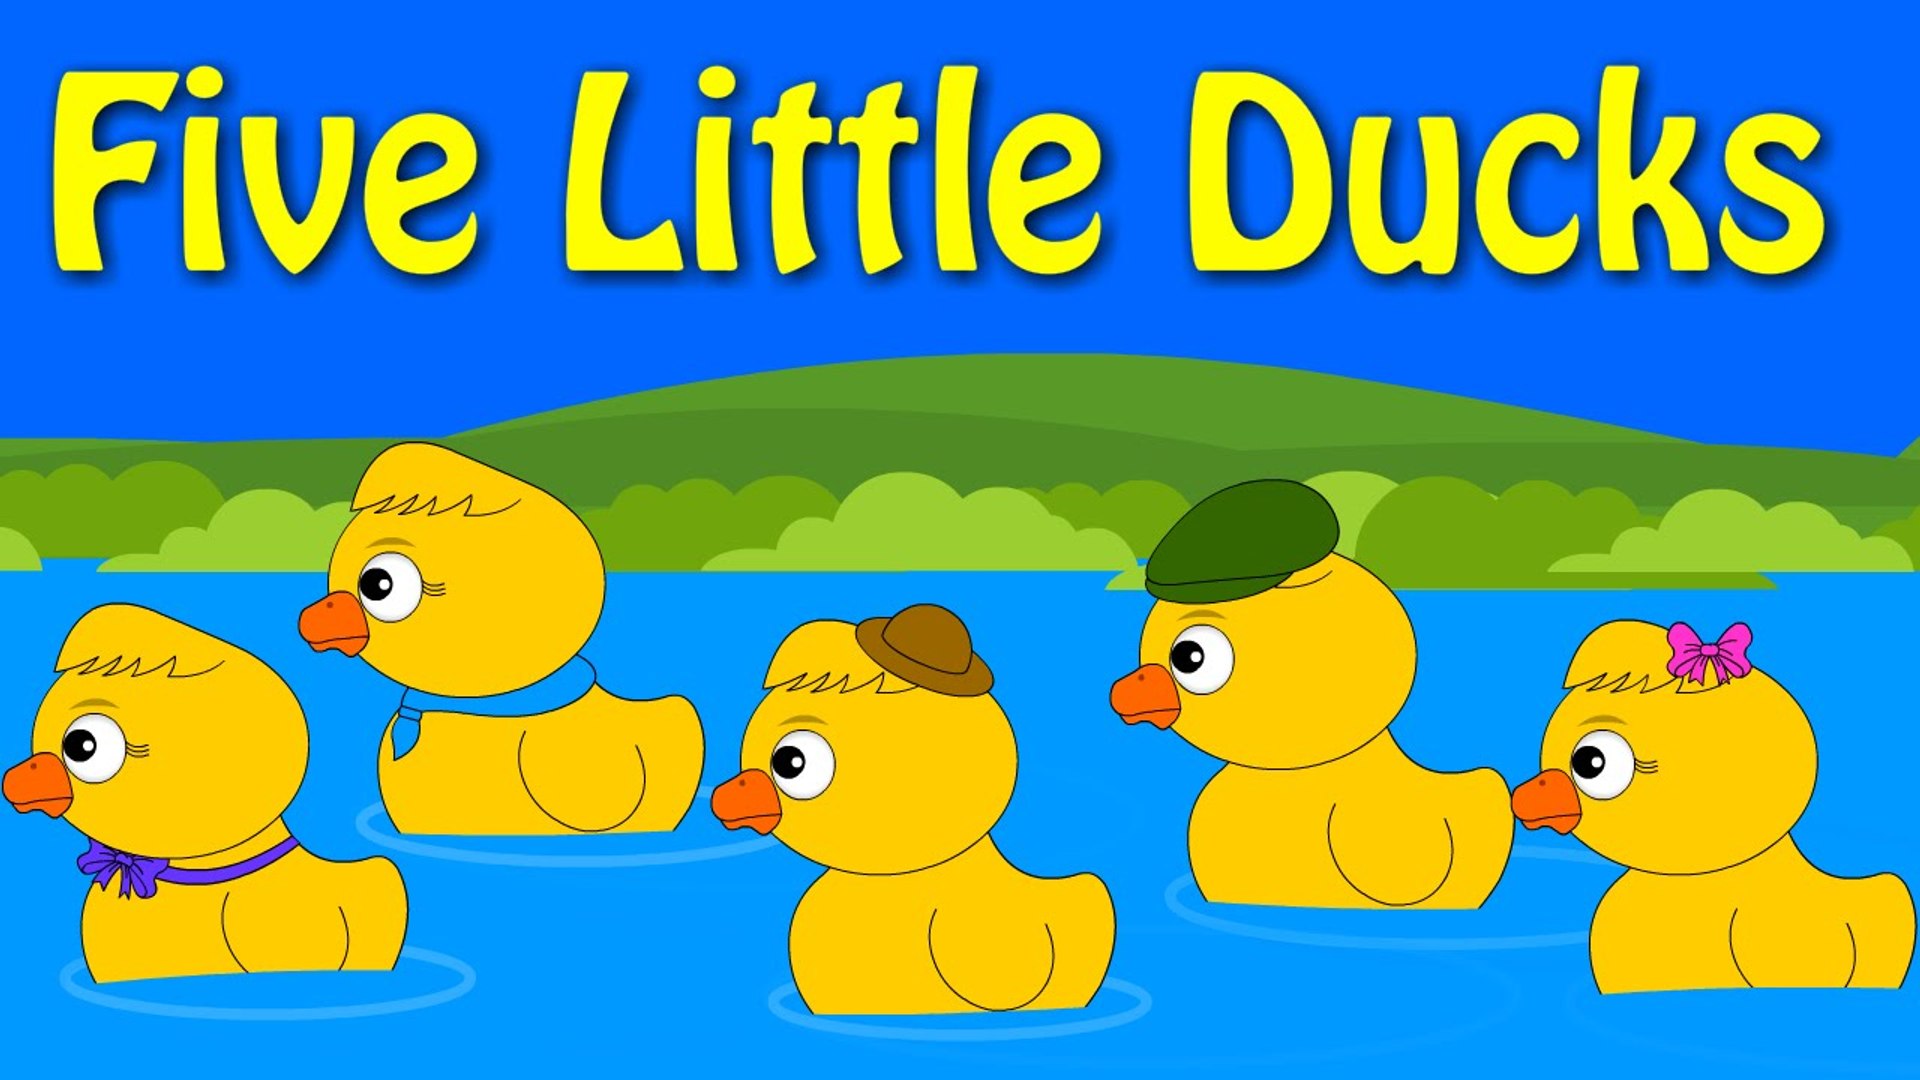 Duck text. Five little Ducks. Five little Ducks Song. Five little Ducks super simple Songs. Five little Ducks | Kids Songs | super simple Songs.